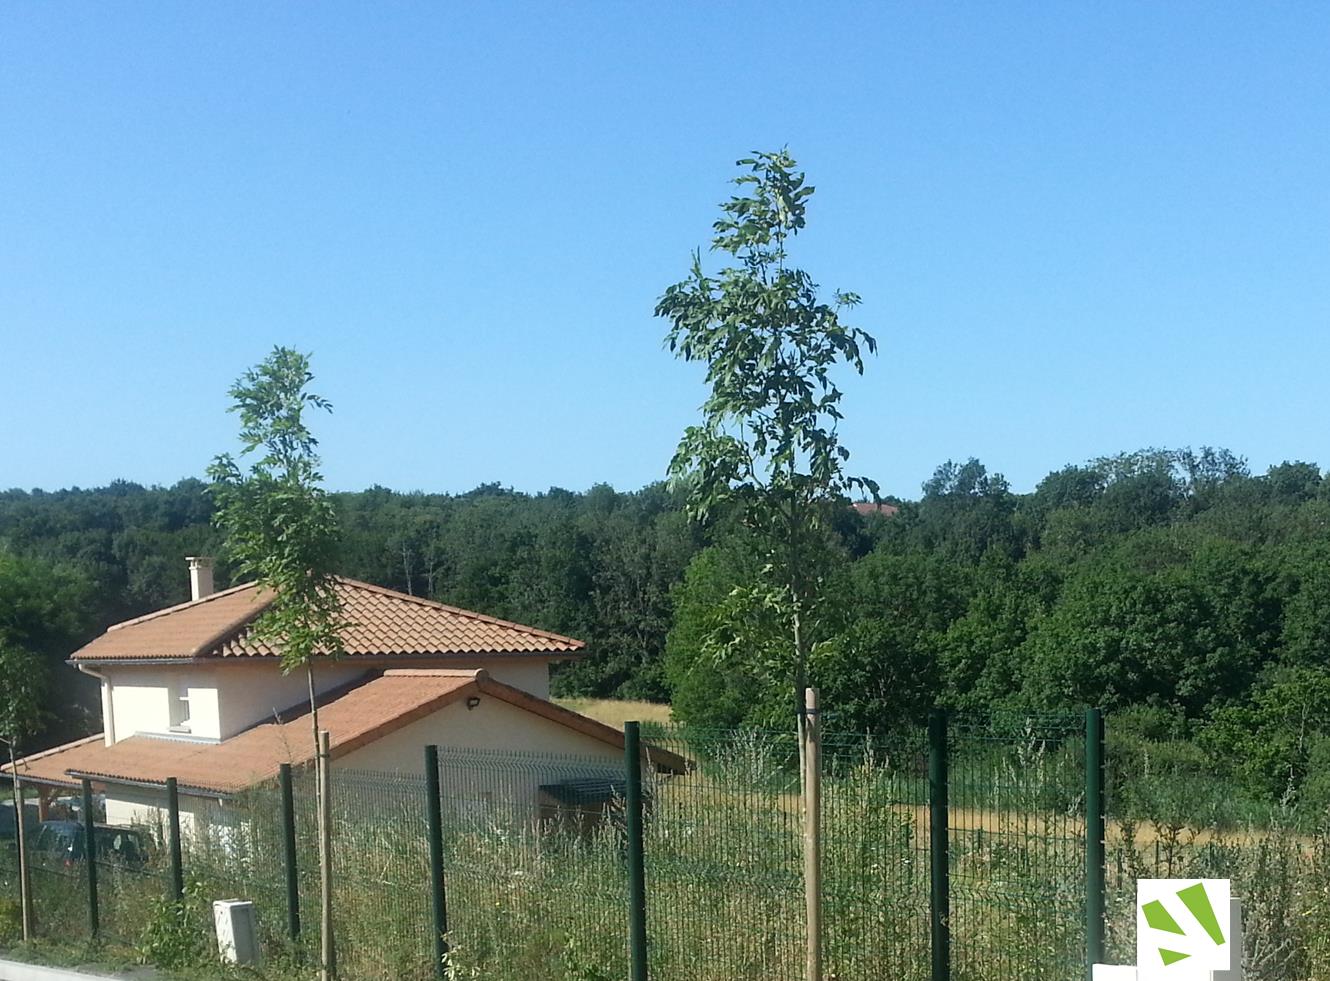 Terrain près de Charvieu Chavagnieux à villefontaine-terrain a batir-isere 38-les jardins de chane-viviant terrains-6